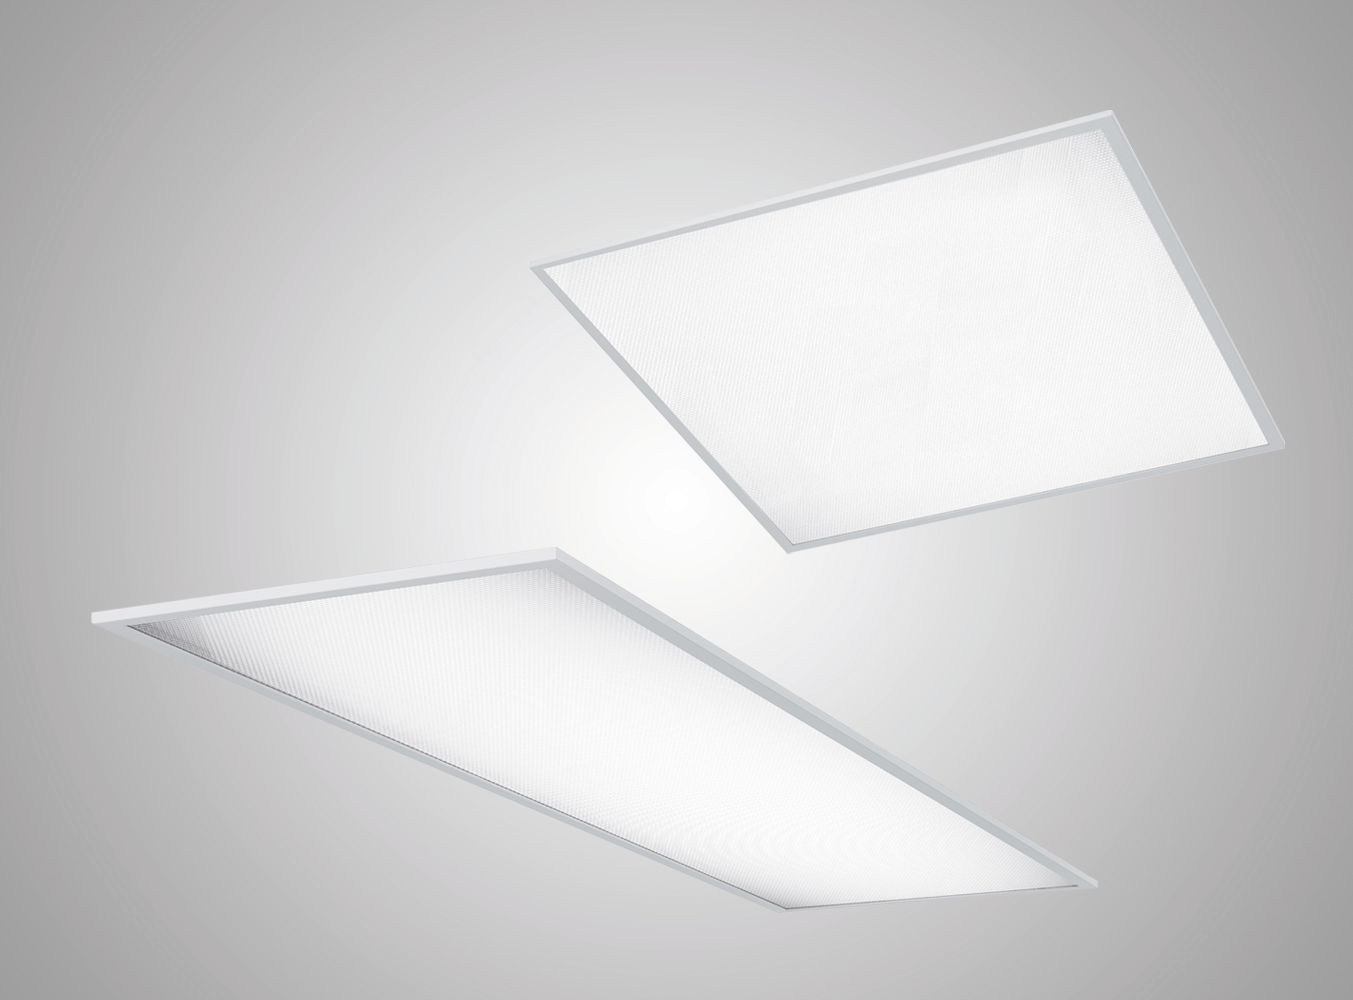 Recessed Rectangular Ceiling Light Fixturesrecessed ceiling light fixture led rectangular square lite